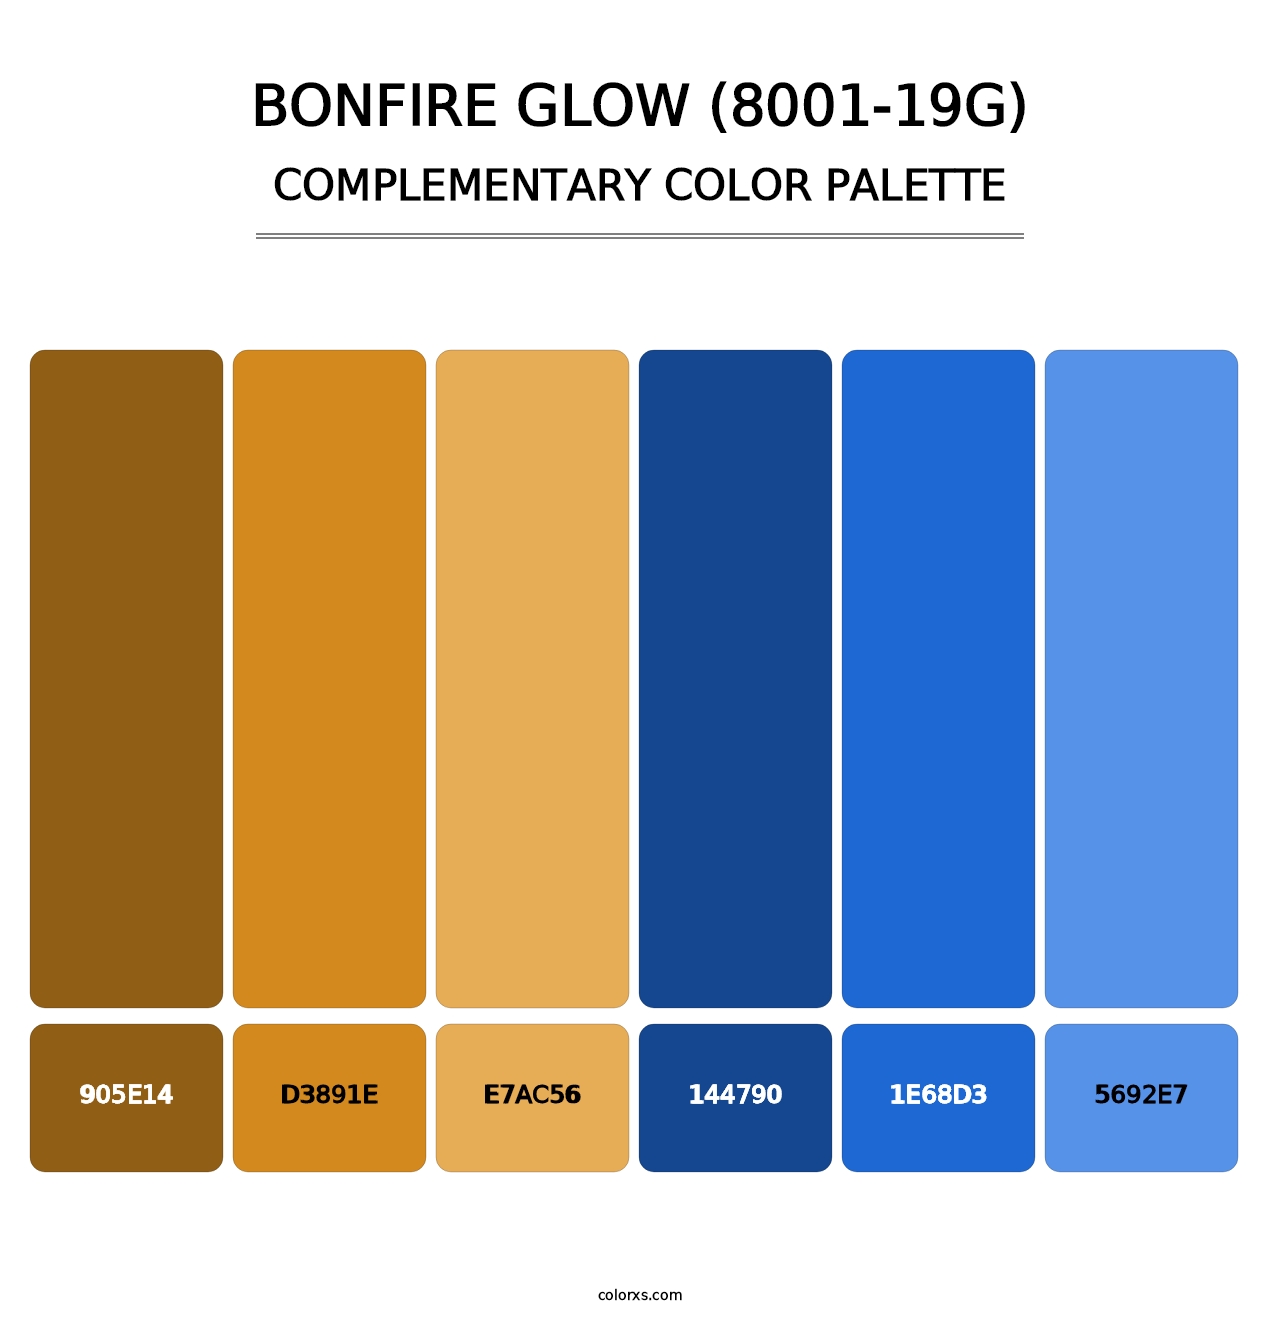 Bonfire Glow (8001-19G) - Complementary Color Palette